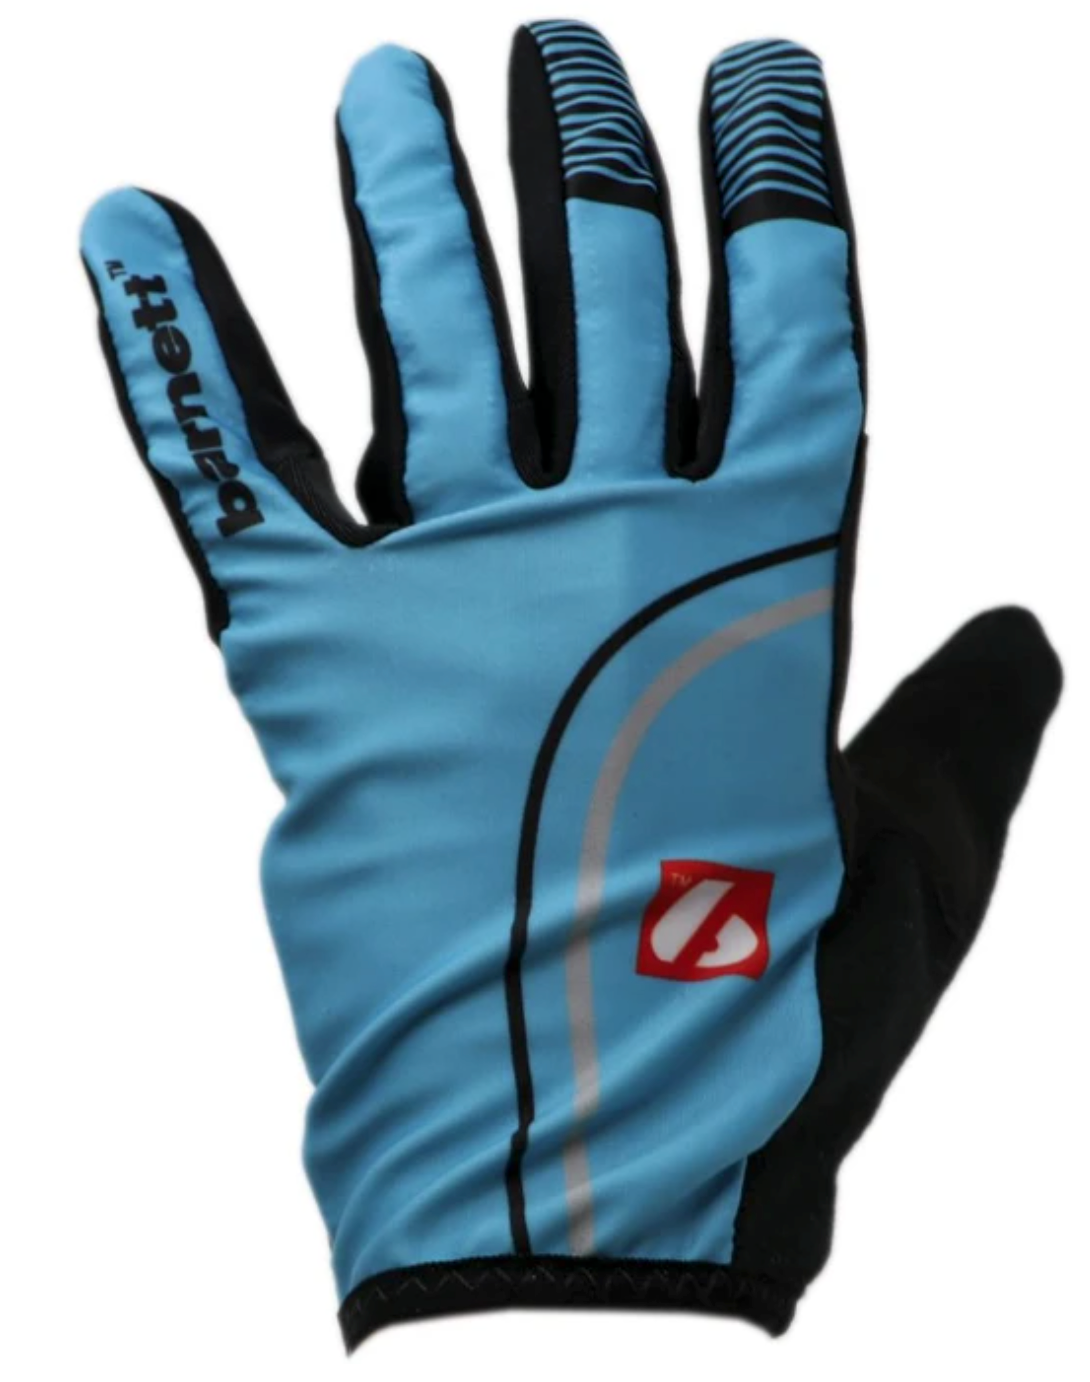 NBG-20 Gloves for Rollerski - cross-country - road bike - running